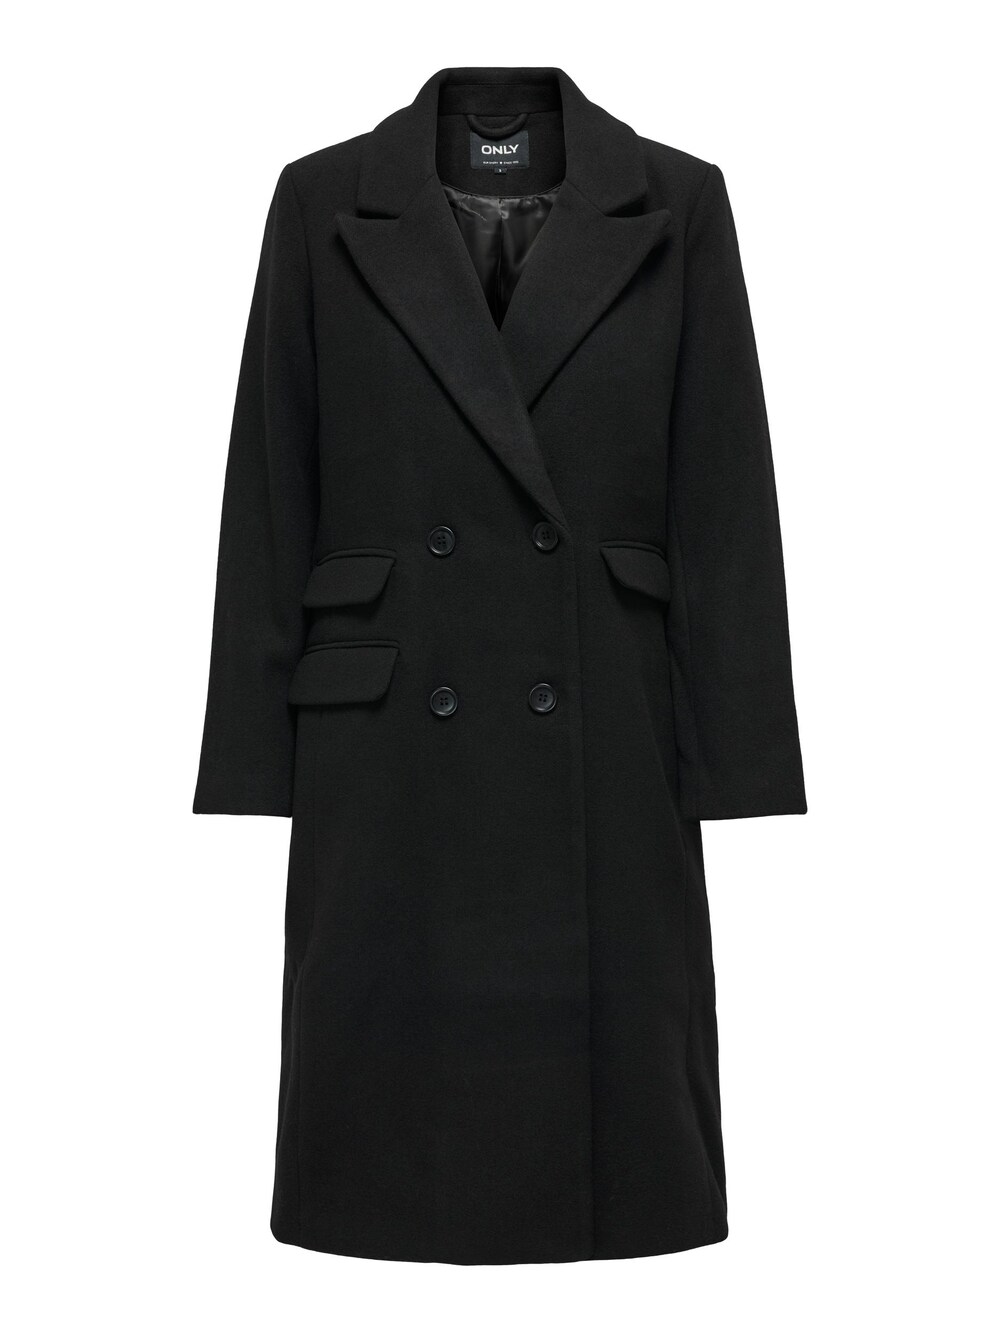 Межсезонное пальто Only Monika, черный межсезонное пальто only josie черный